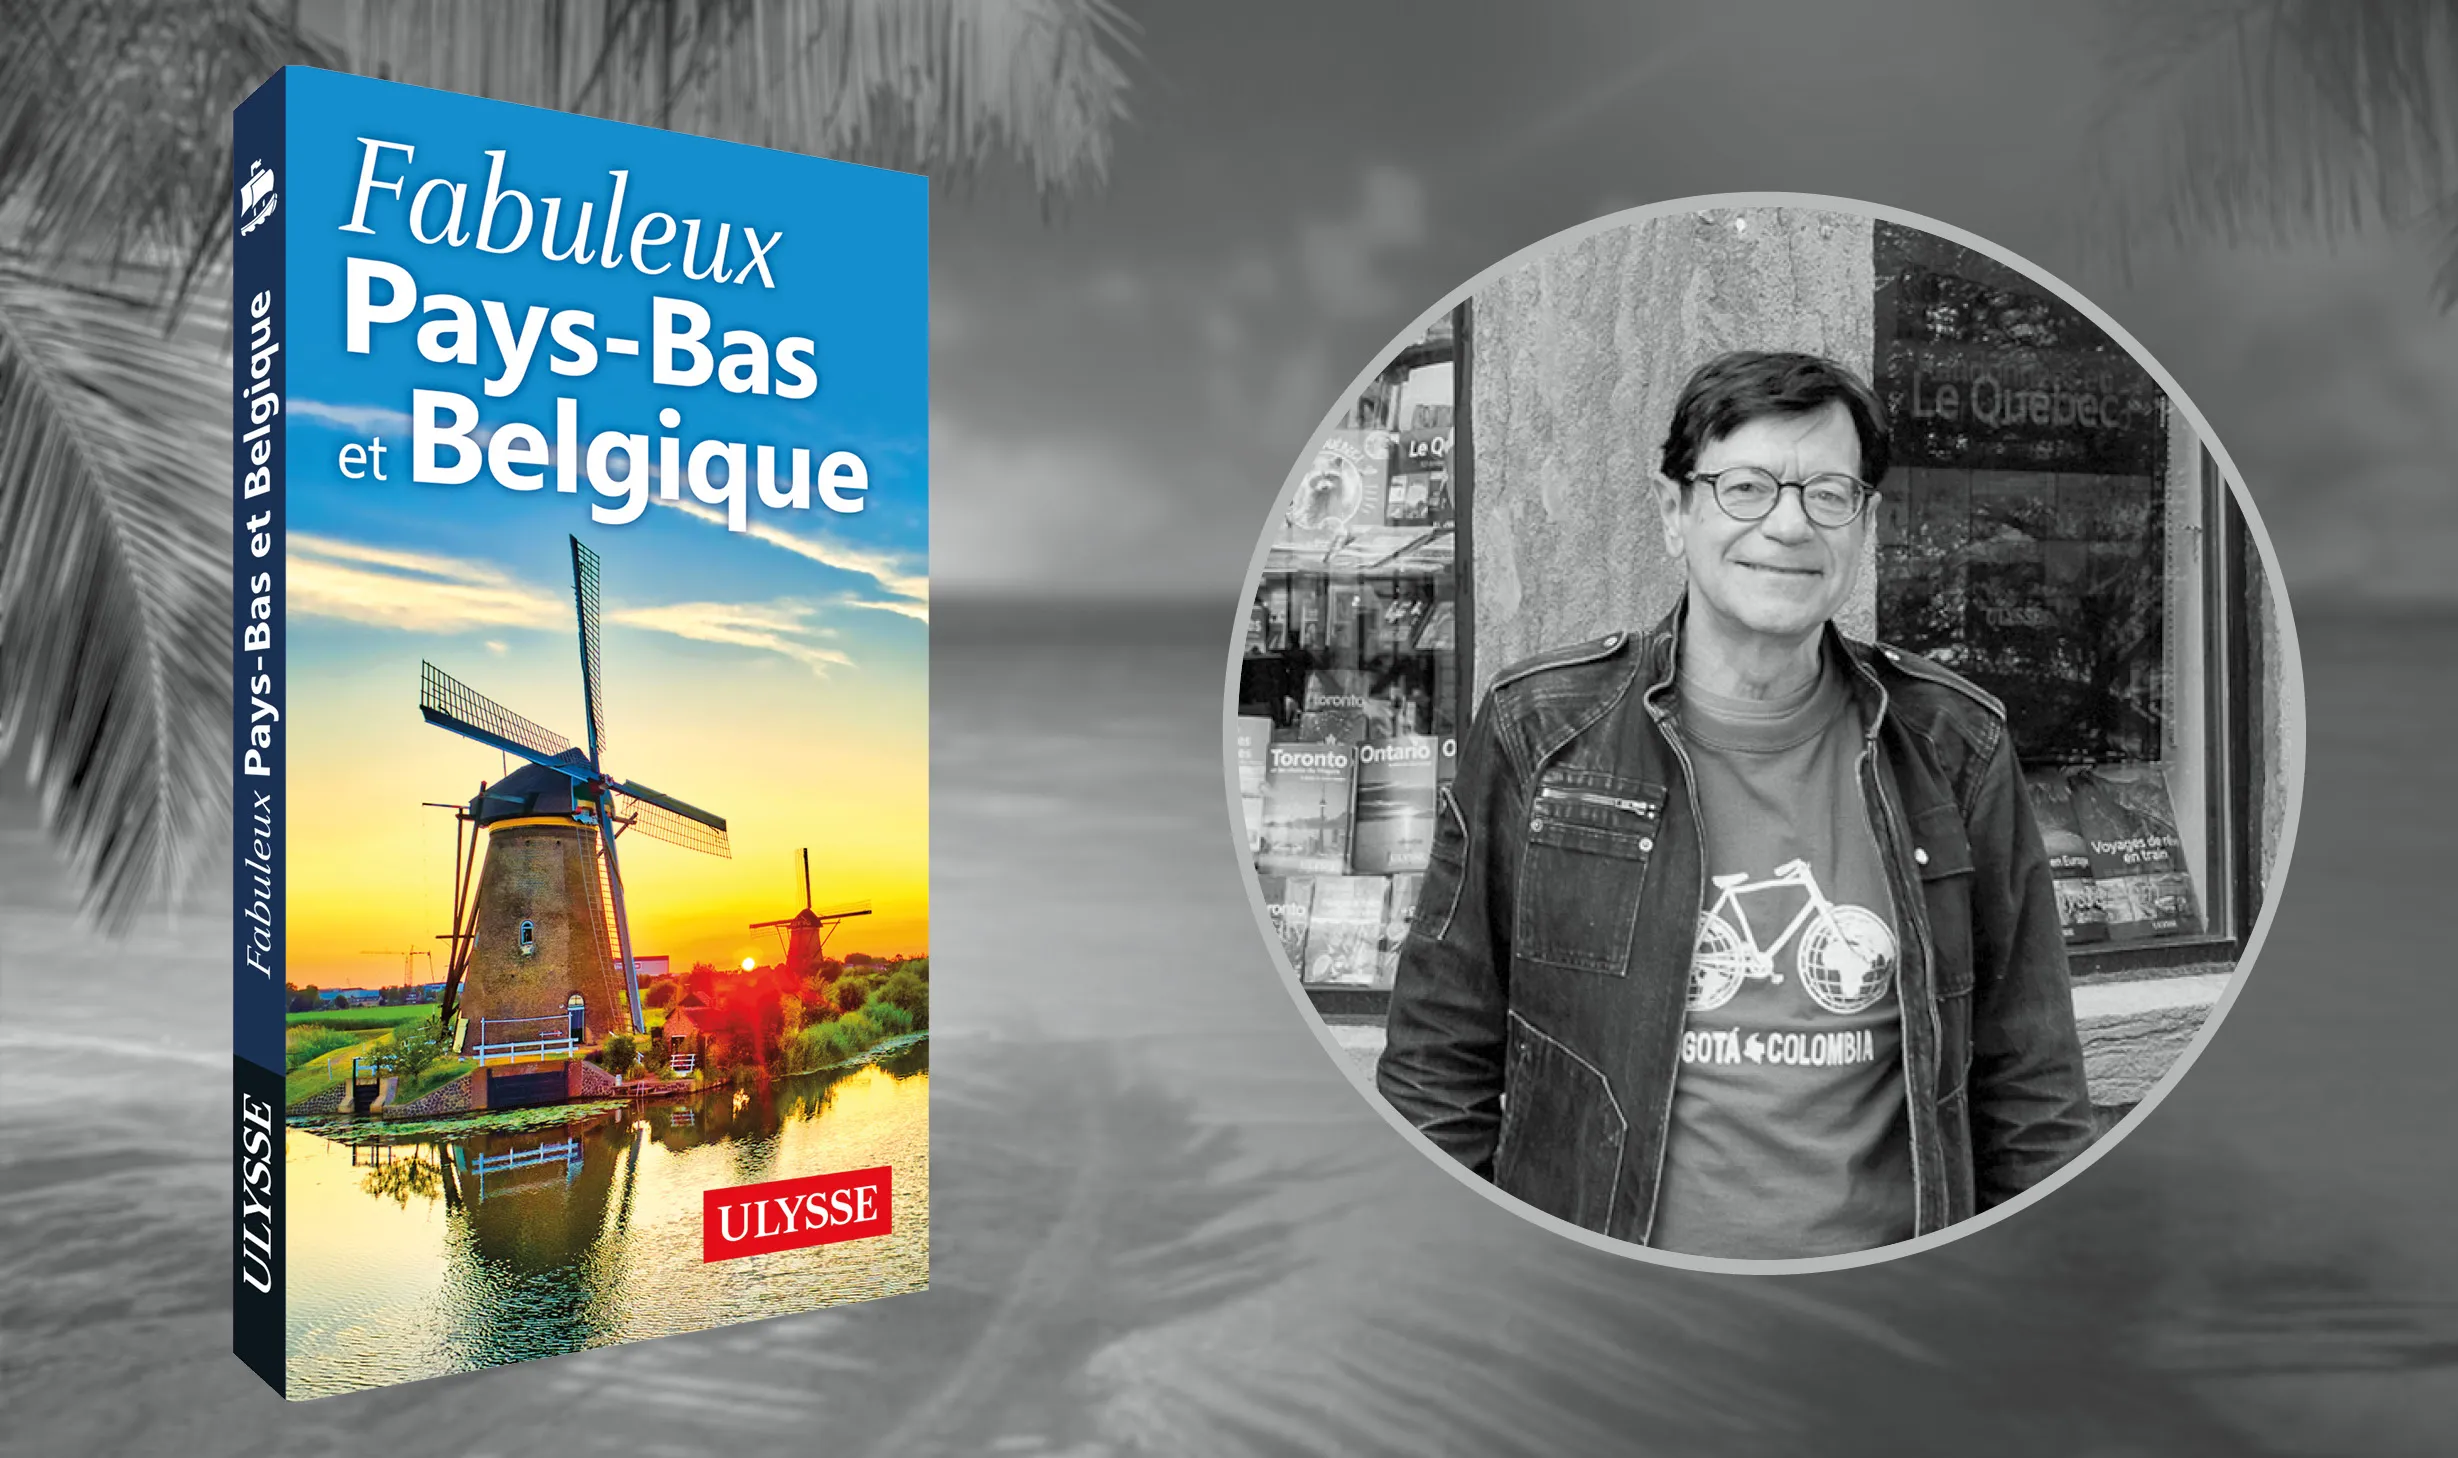 Daniel Desjardins des Guides de Voyage Ulysse et le guide Fabuleux Pays-Bas et Belgique dont il a assuré la coordination.